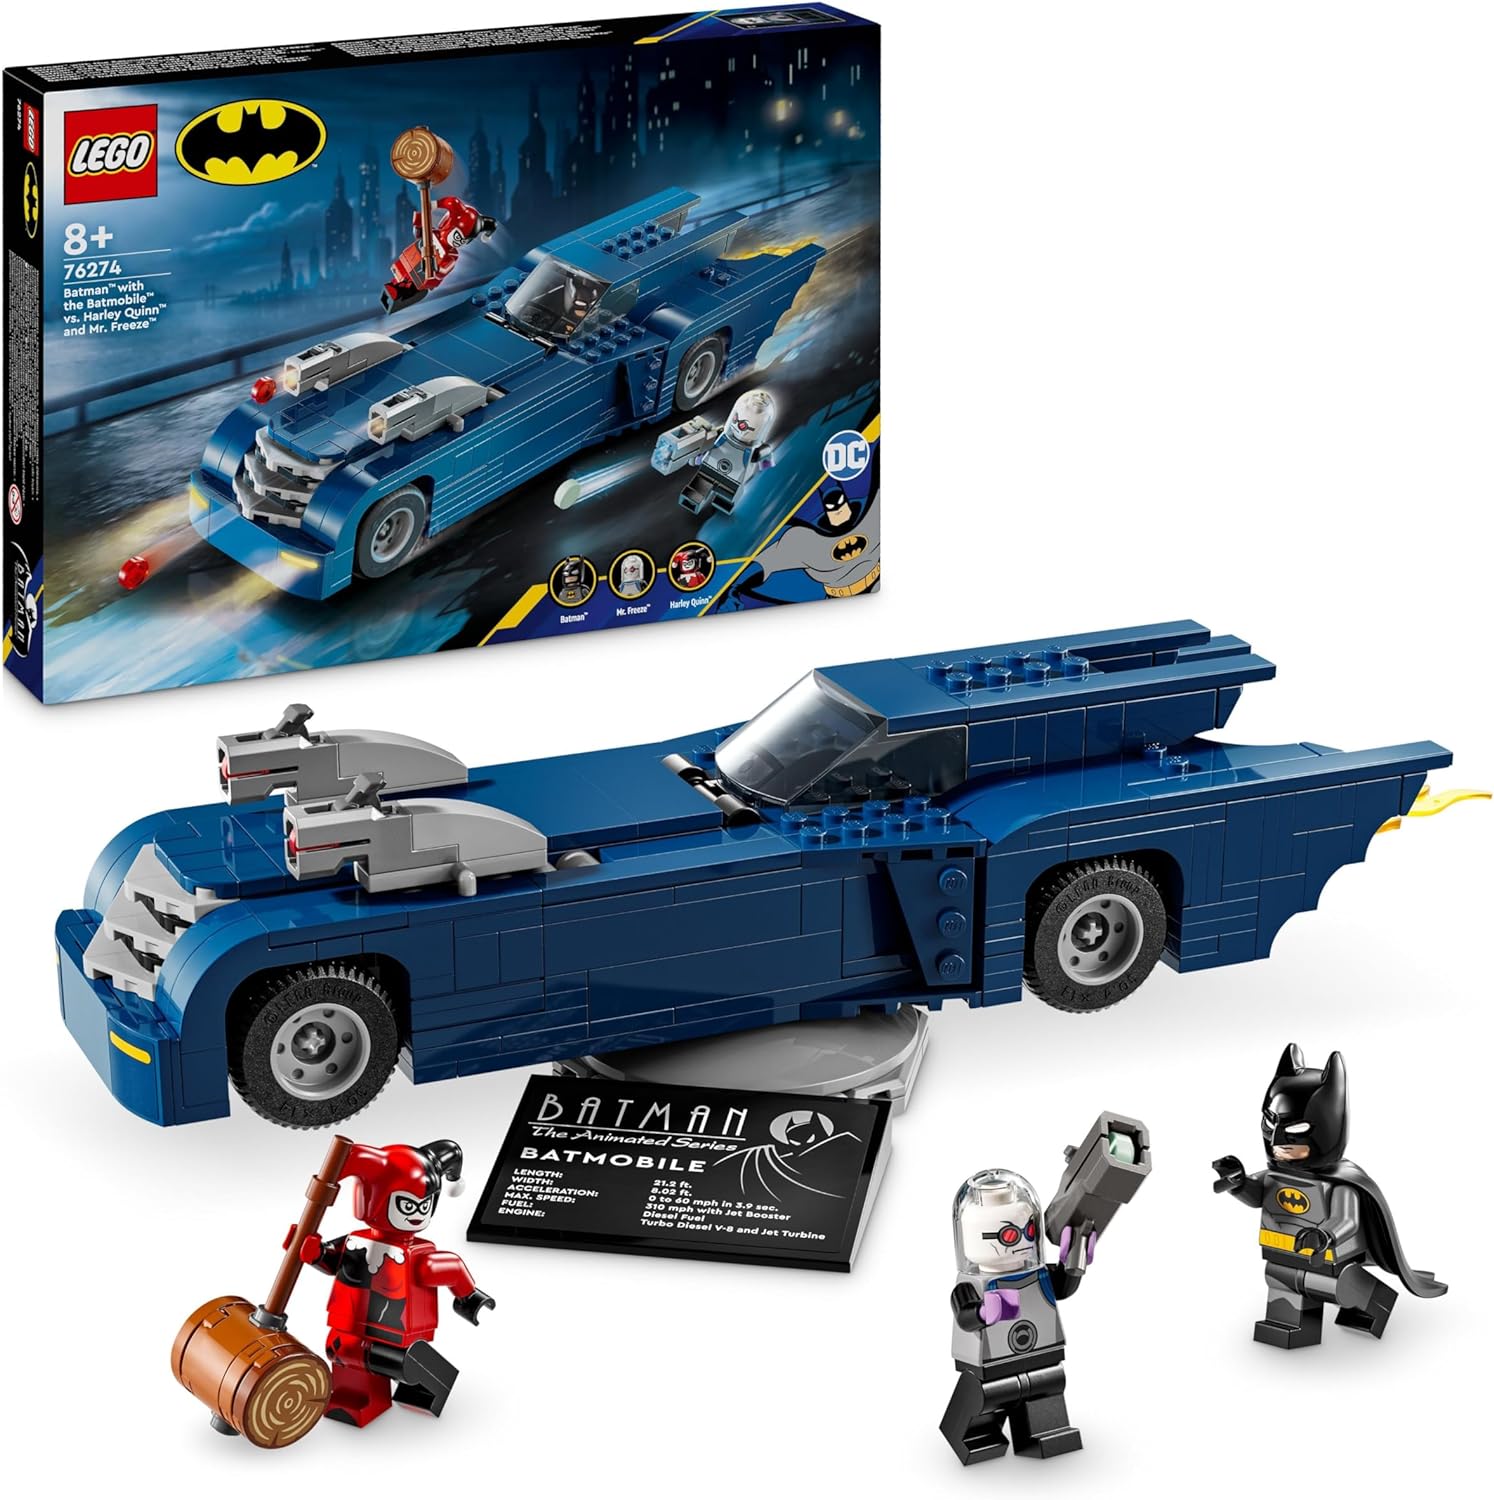 LEGO 76274 BATMAN CON BATMOBILE VS HARLEY QUINN E MR FREEZE SUPER HEROES